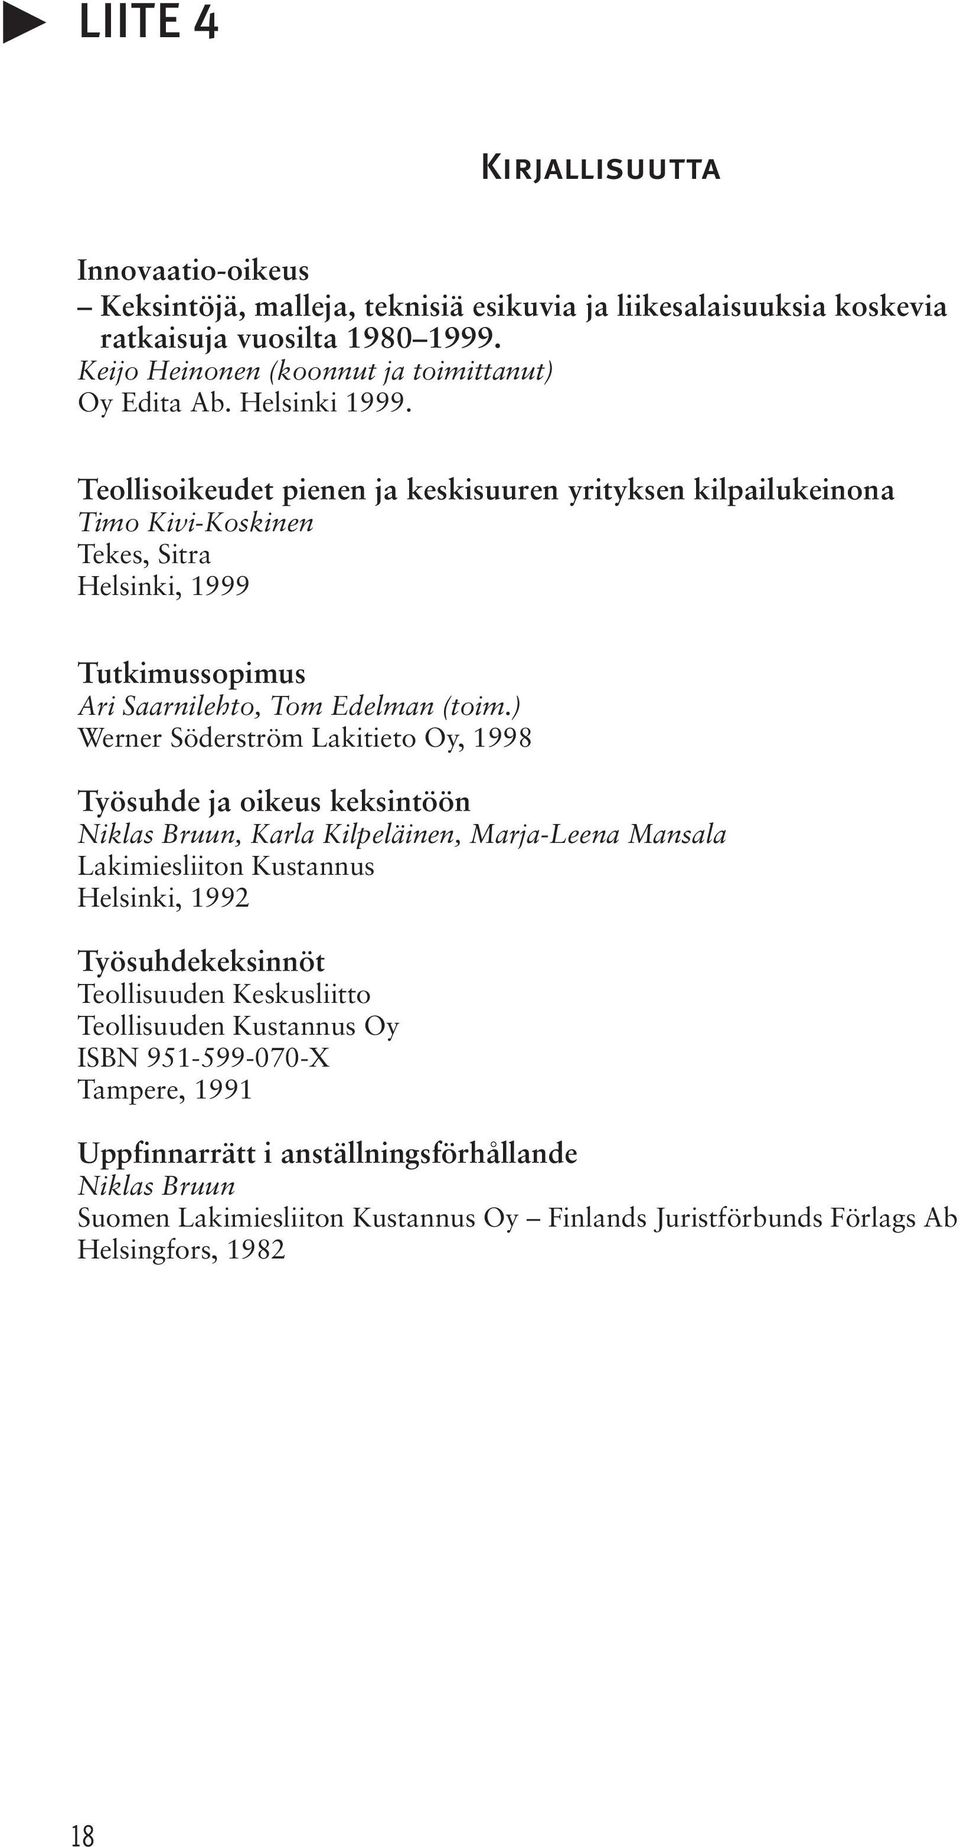 ) Werner Söderström Lakitieto Oy, 1998 Työsuhde ja oikeus keksintöön Niklas Bruun, Karla Kilpeläinen, Marja-Leena Mansala Lakimiesliiton Kustannus Helsinki, 1992 Työsuhdekeksinnöt Teollisuuden